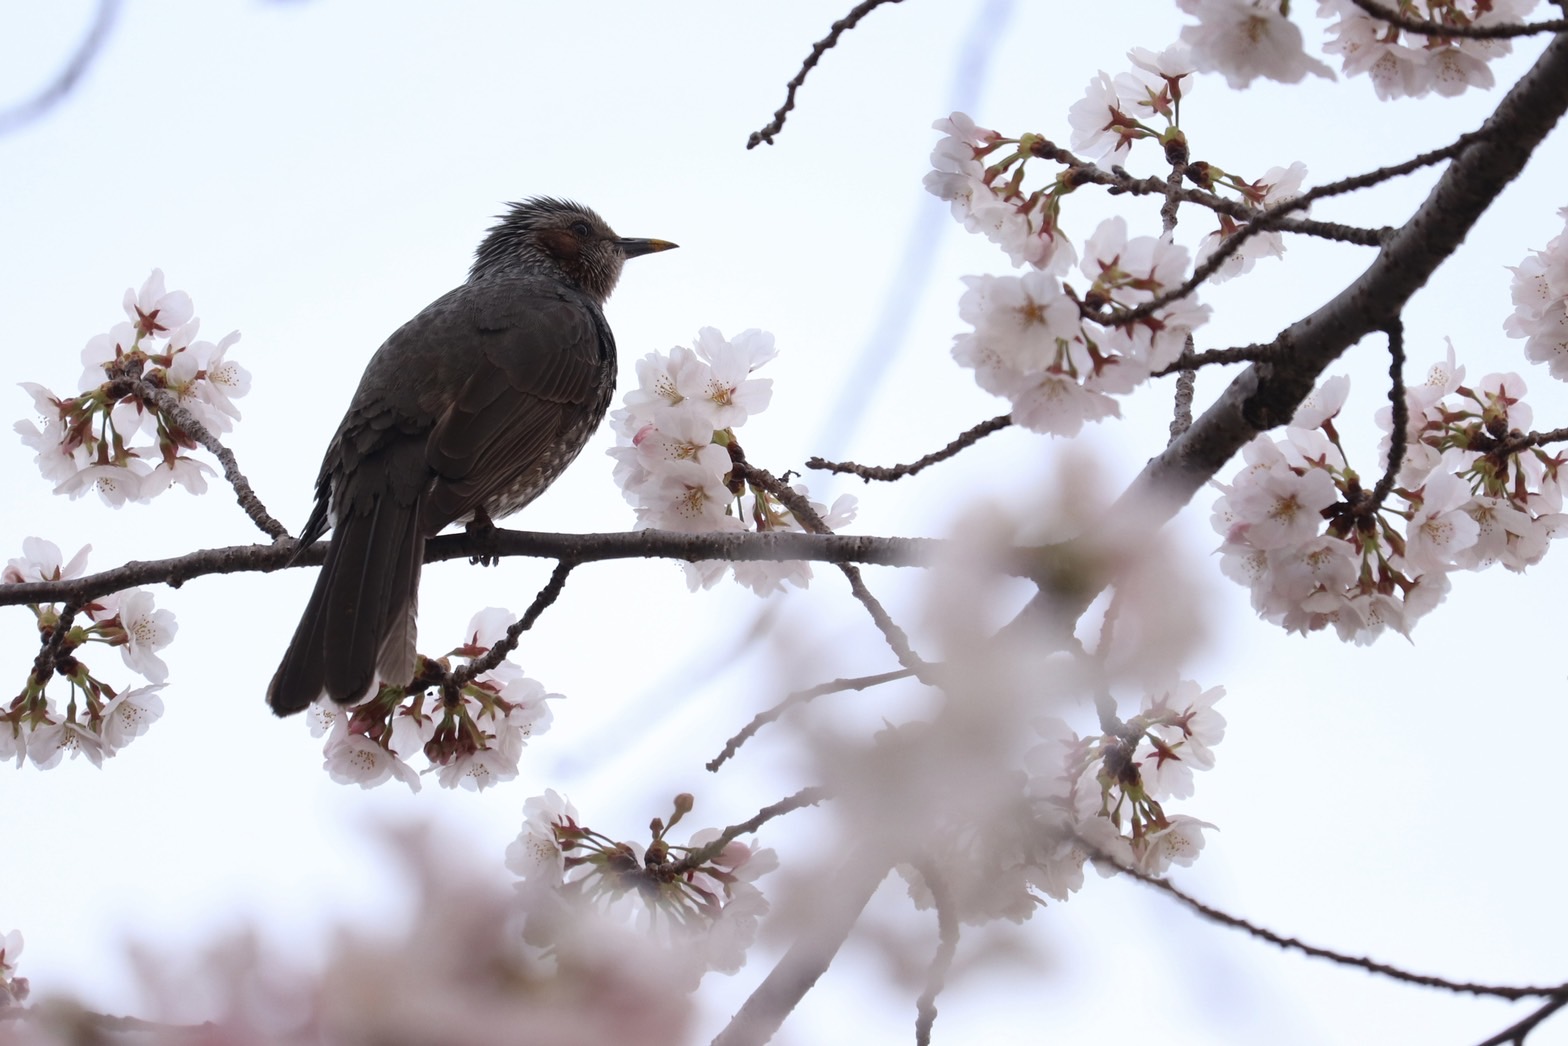 4月2日に撮影された、枝に鳥がとまり満開の花をつける桜の写真